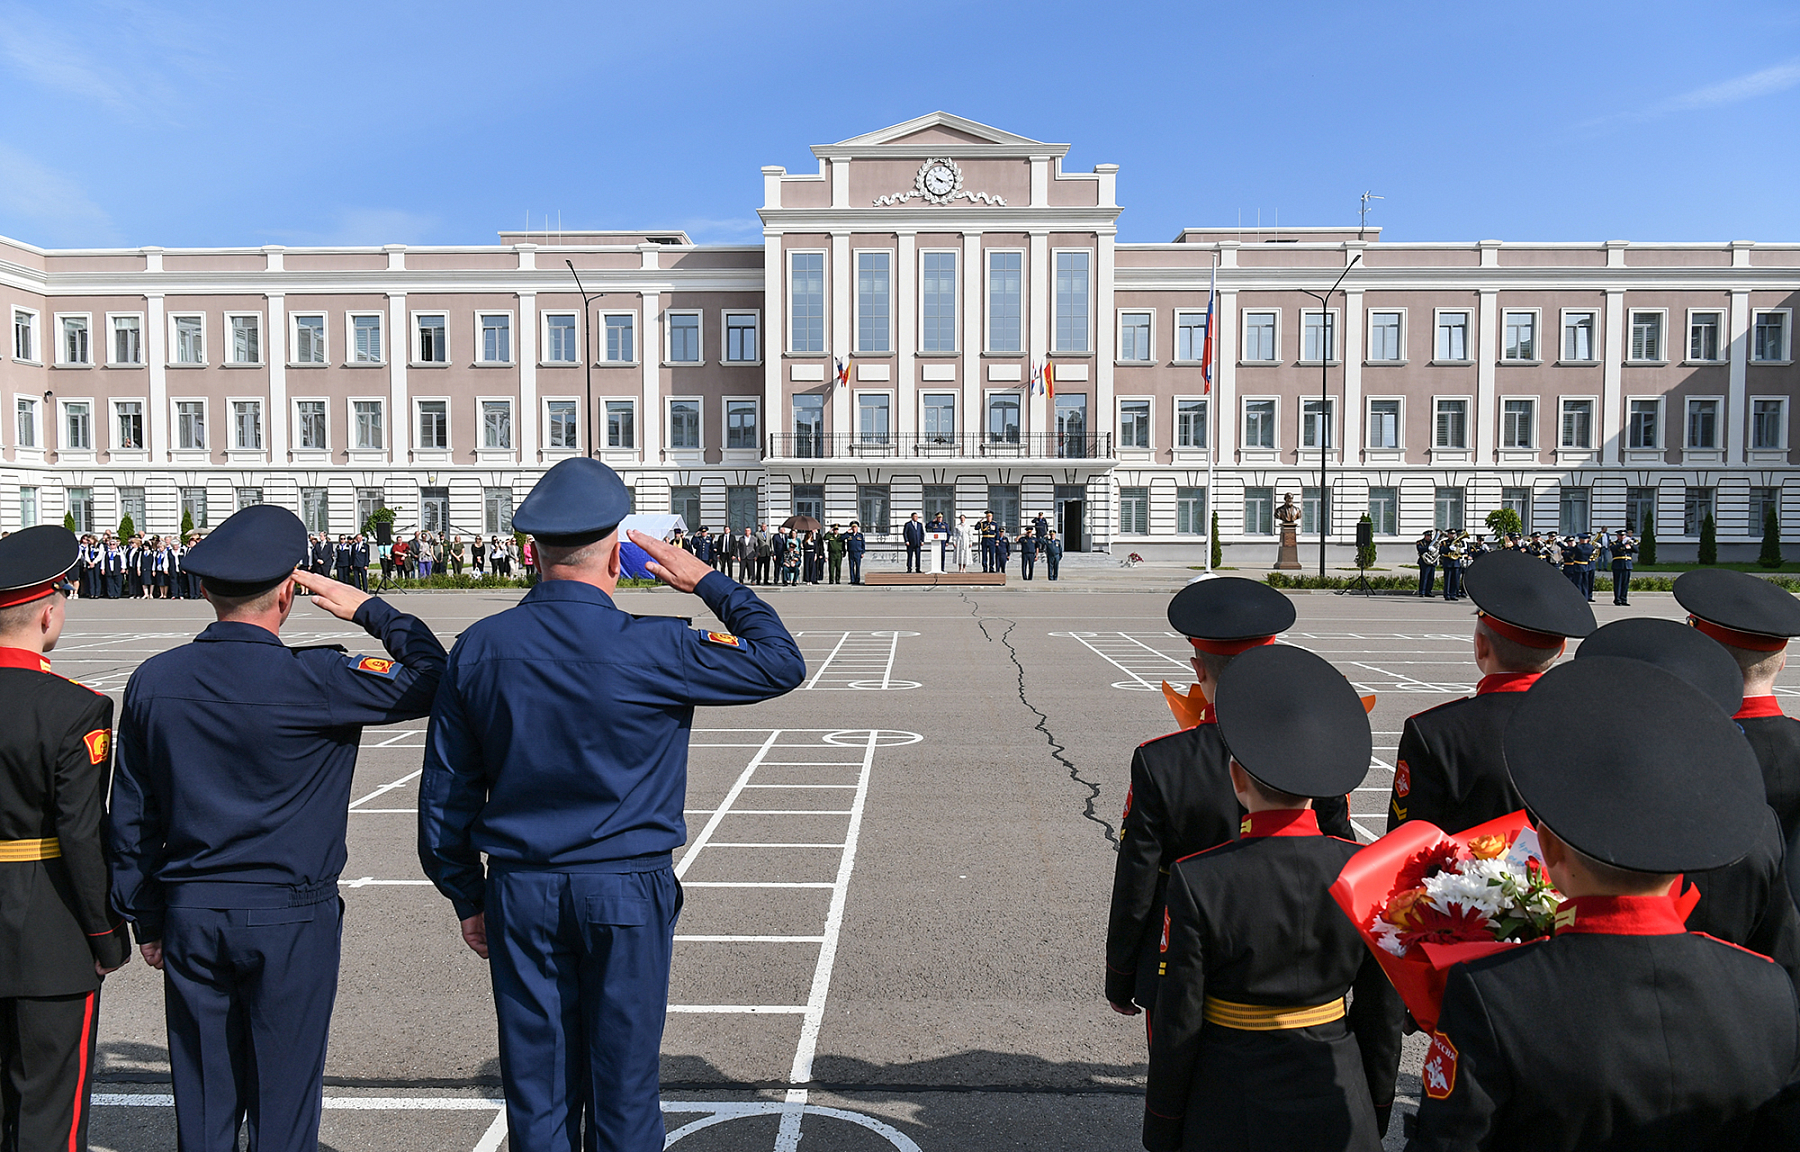 1 сентября больше 500 будущих защитников Отечества начали учебу в Тверском суворовском военном училище